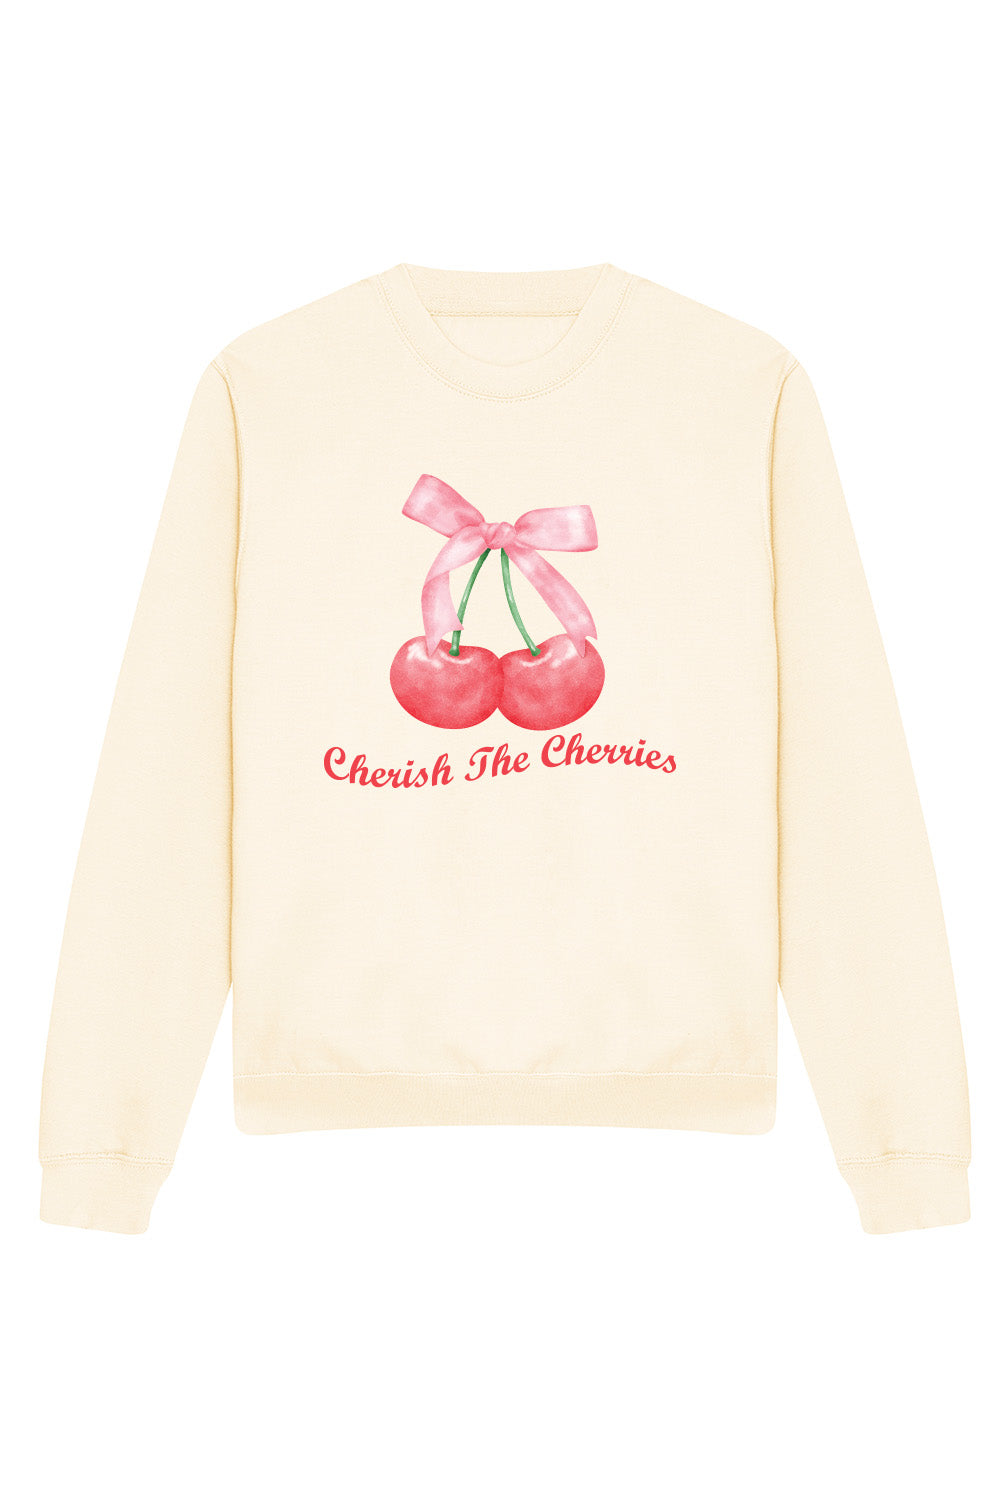 Cherish the Cherries Sweatshirt In Vanilla (Custom Pack)